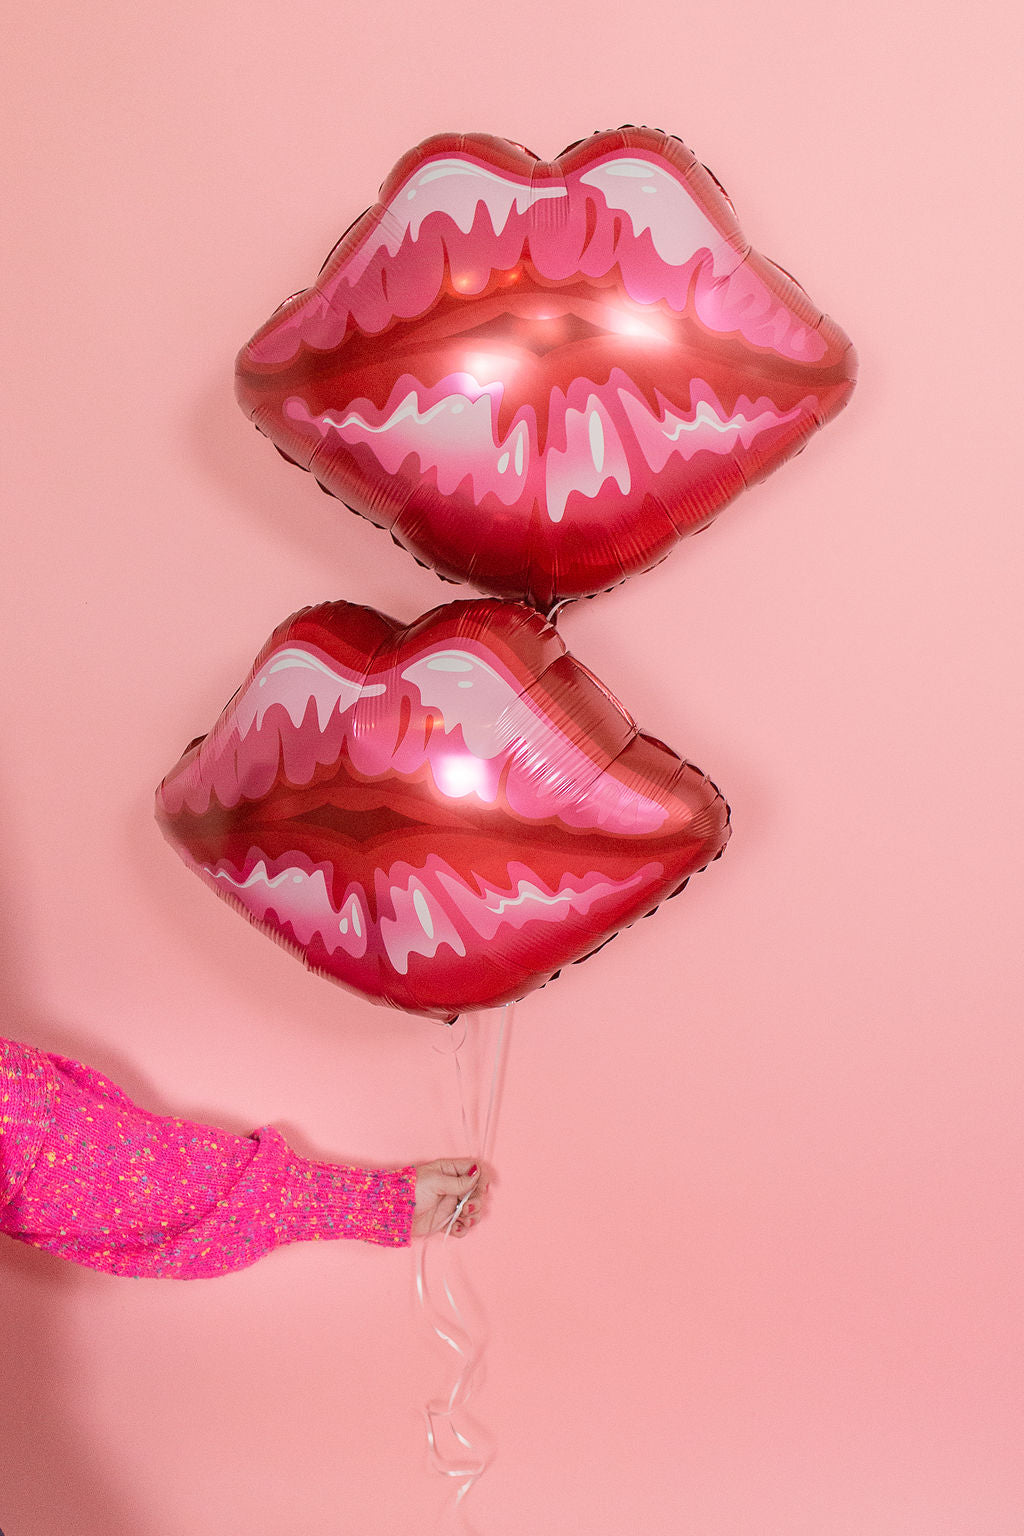 Jumbo Lip Kiss Balloon - Glamfetti